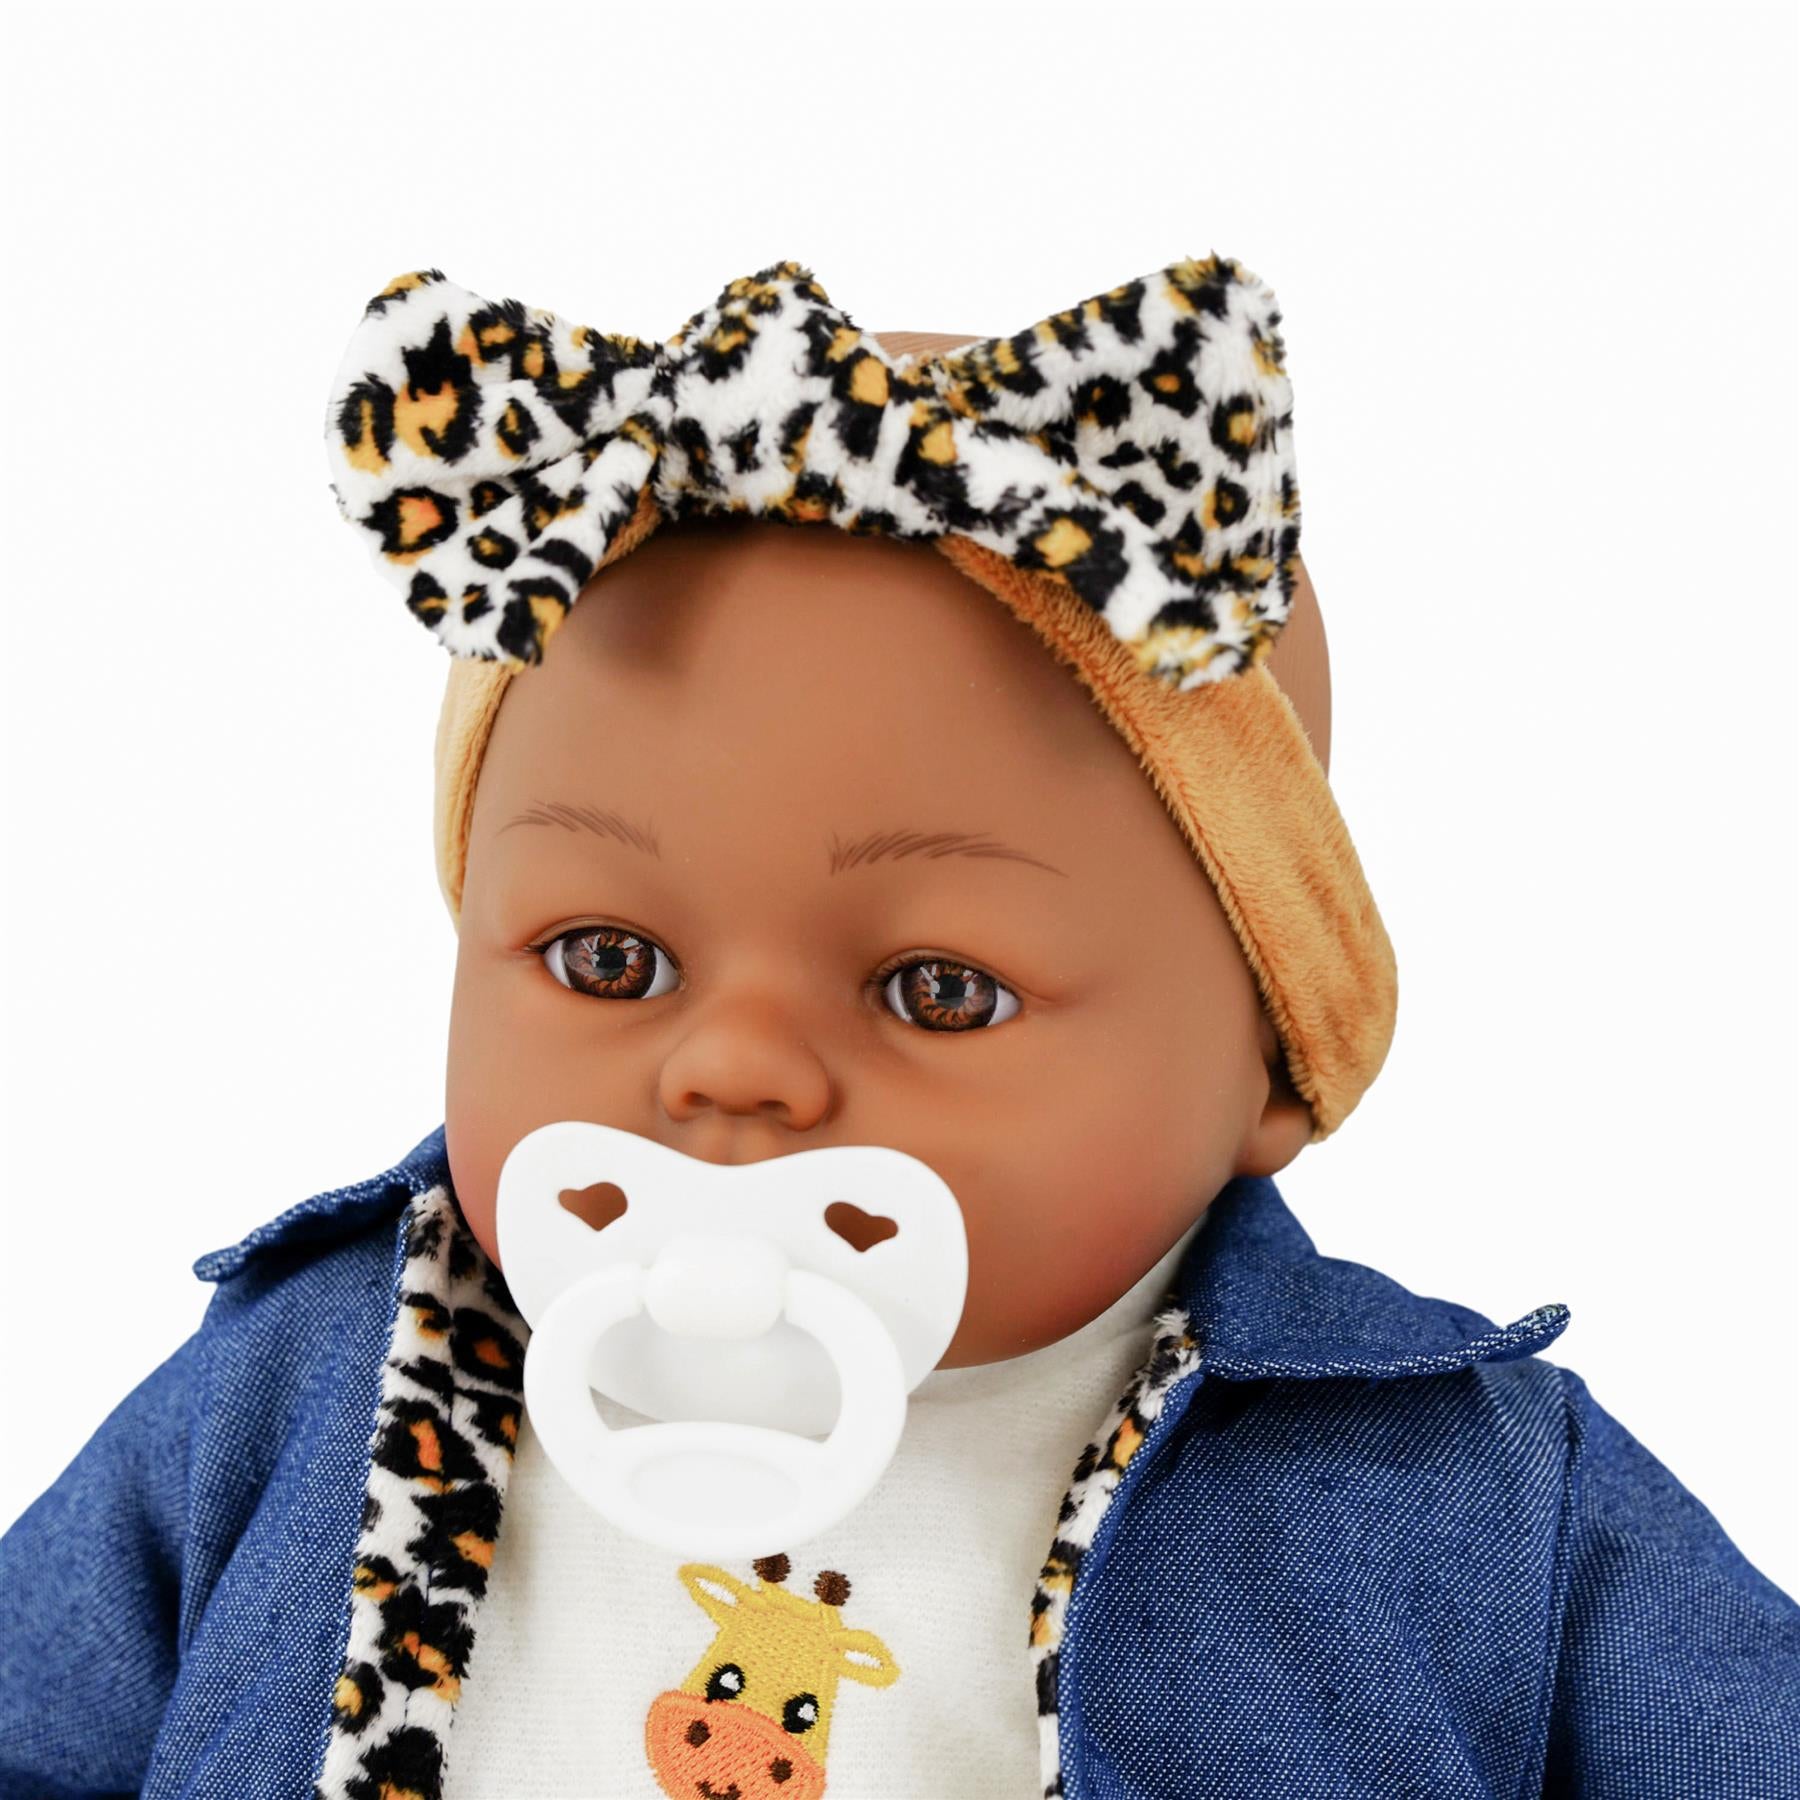 BiBi Black Baby Doll "Cheetah" (45 cm / 18") by BiBi Doll - The Magic Toy Shop